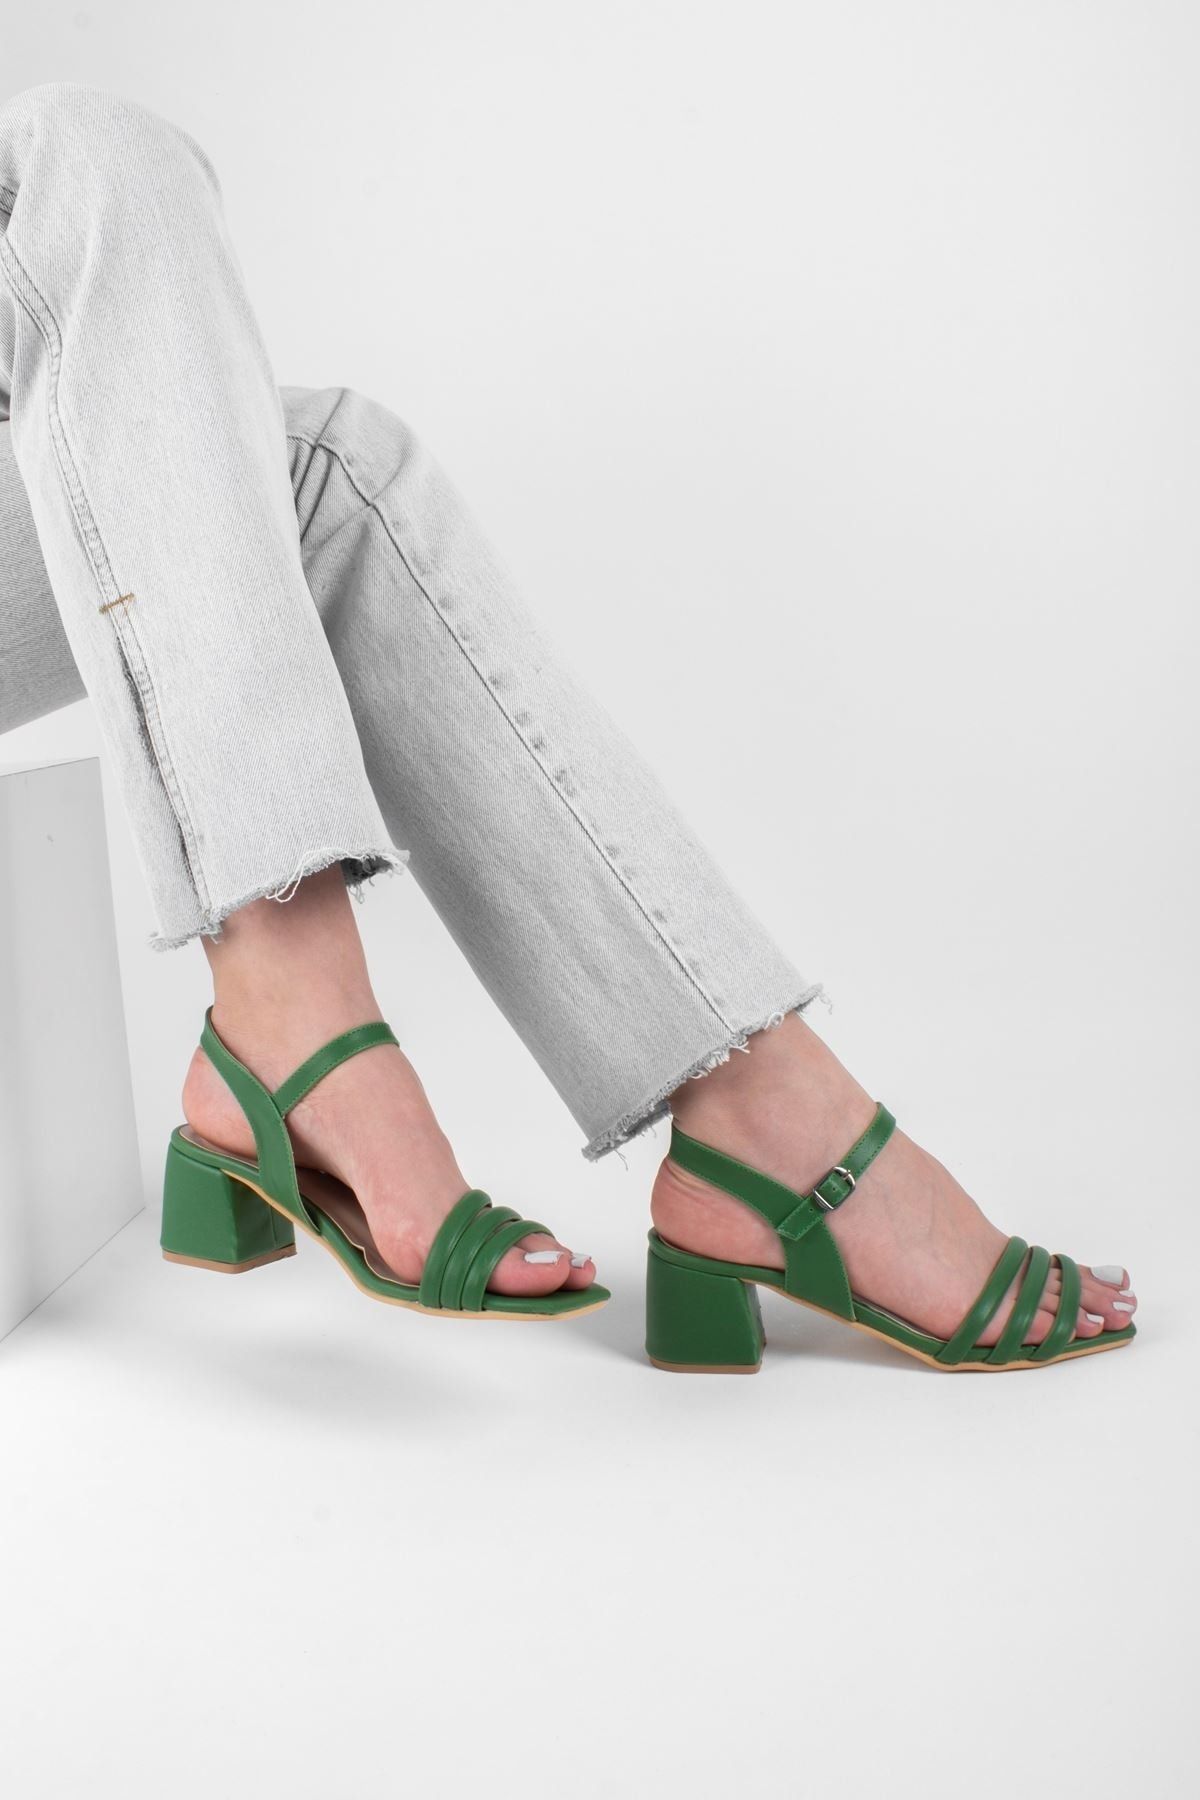 LAL SHOES & BAGS Kadın Yeşil Biyeli Klasik Topuklu Ayakkabı